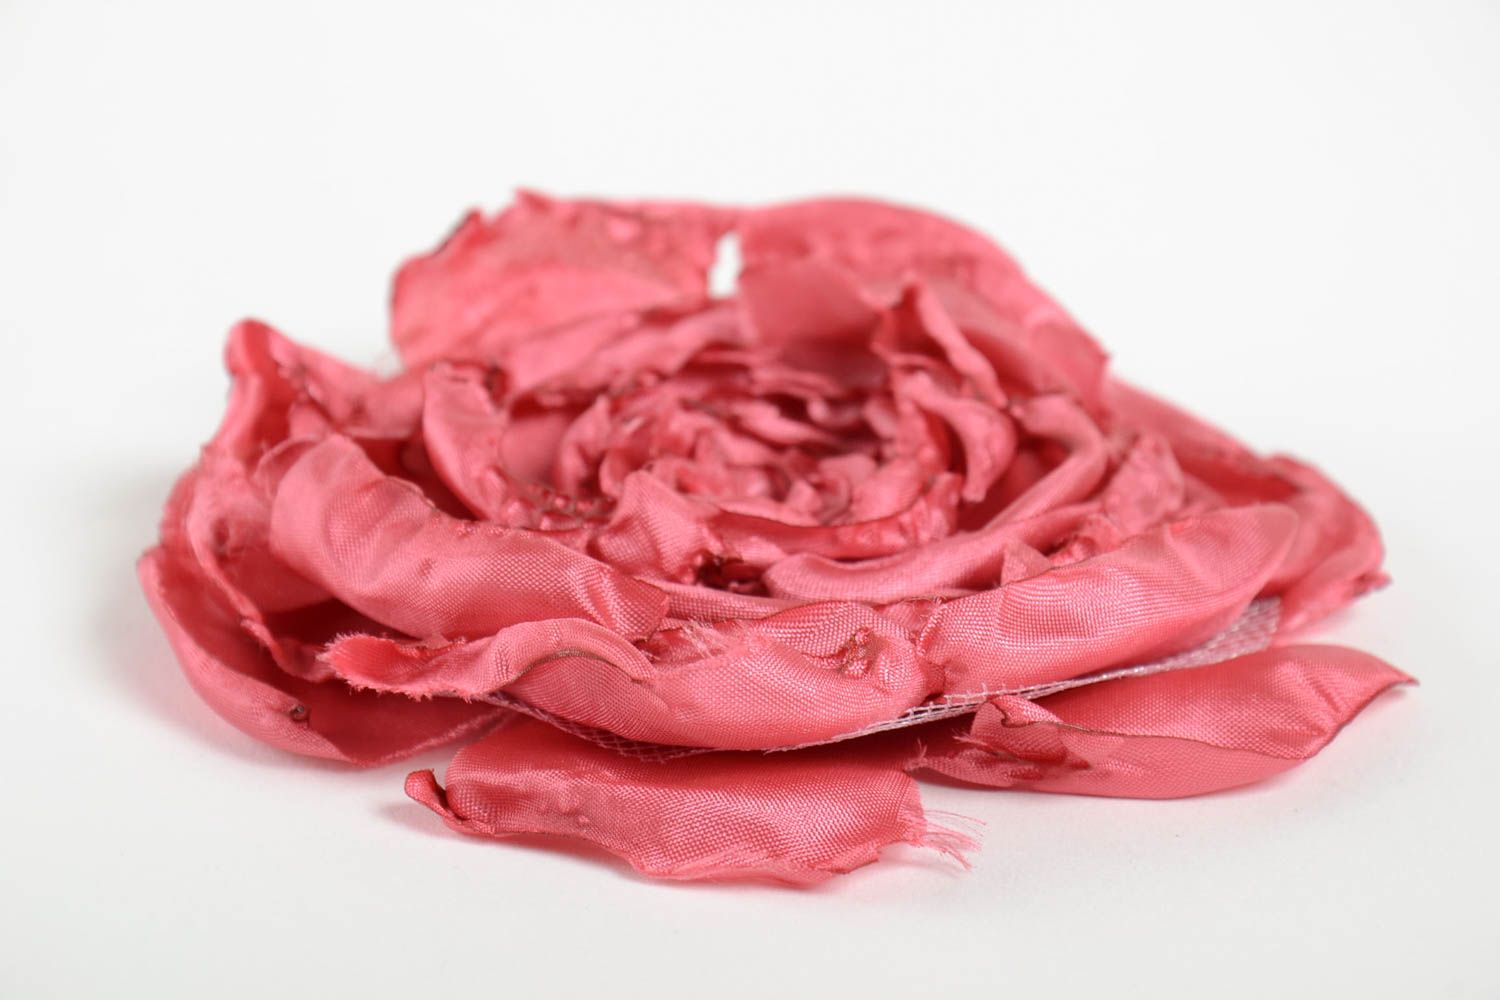 Брошь цветок из лент розовая крупная красивая нарядная стильная ручной работы фото 2